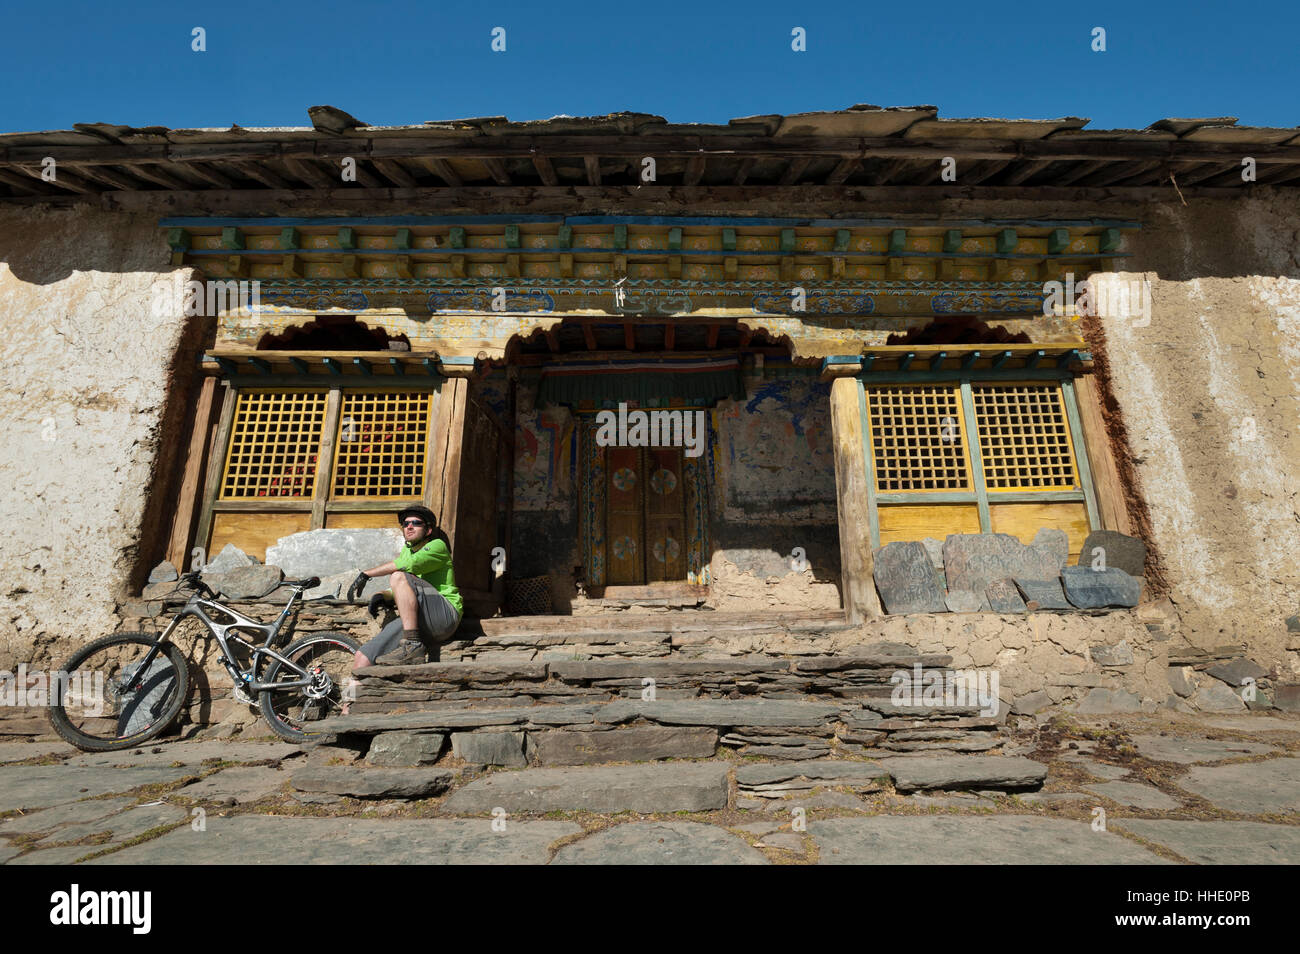 Un vélo de montagne prend un repos bien mérité à Mu Gompa, le dernier village de la vallée de Tsum, Népal Banque D'Images